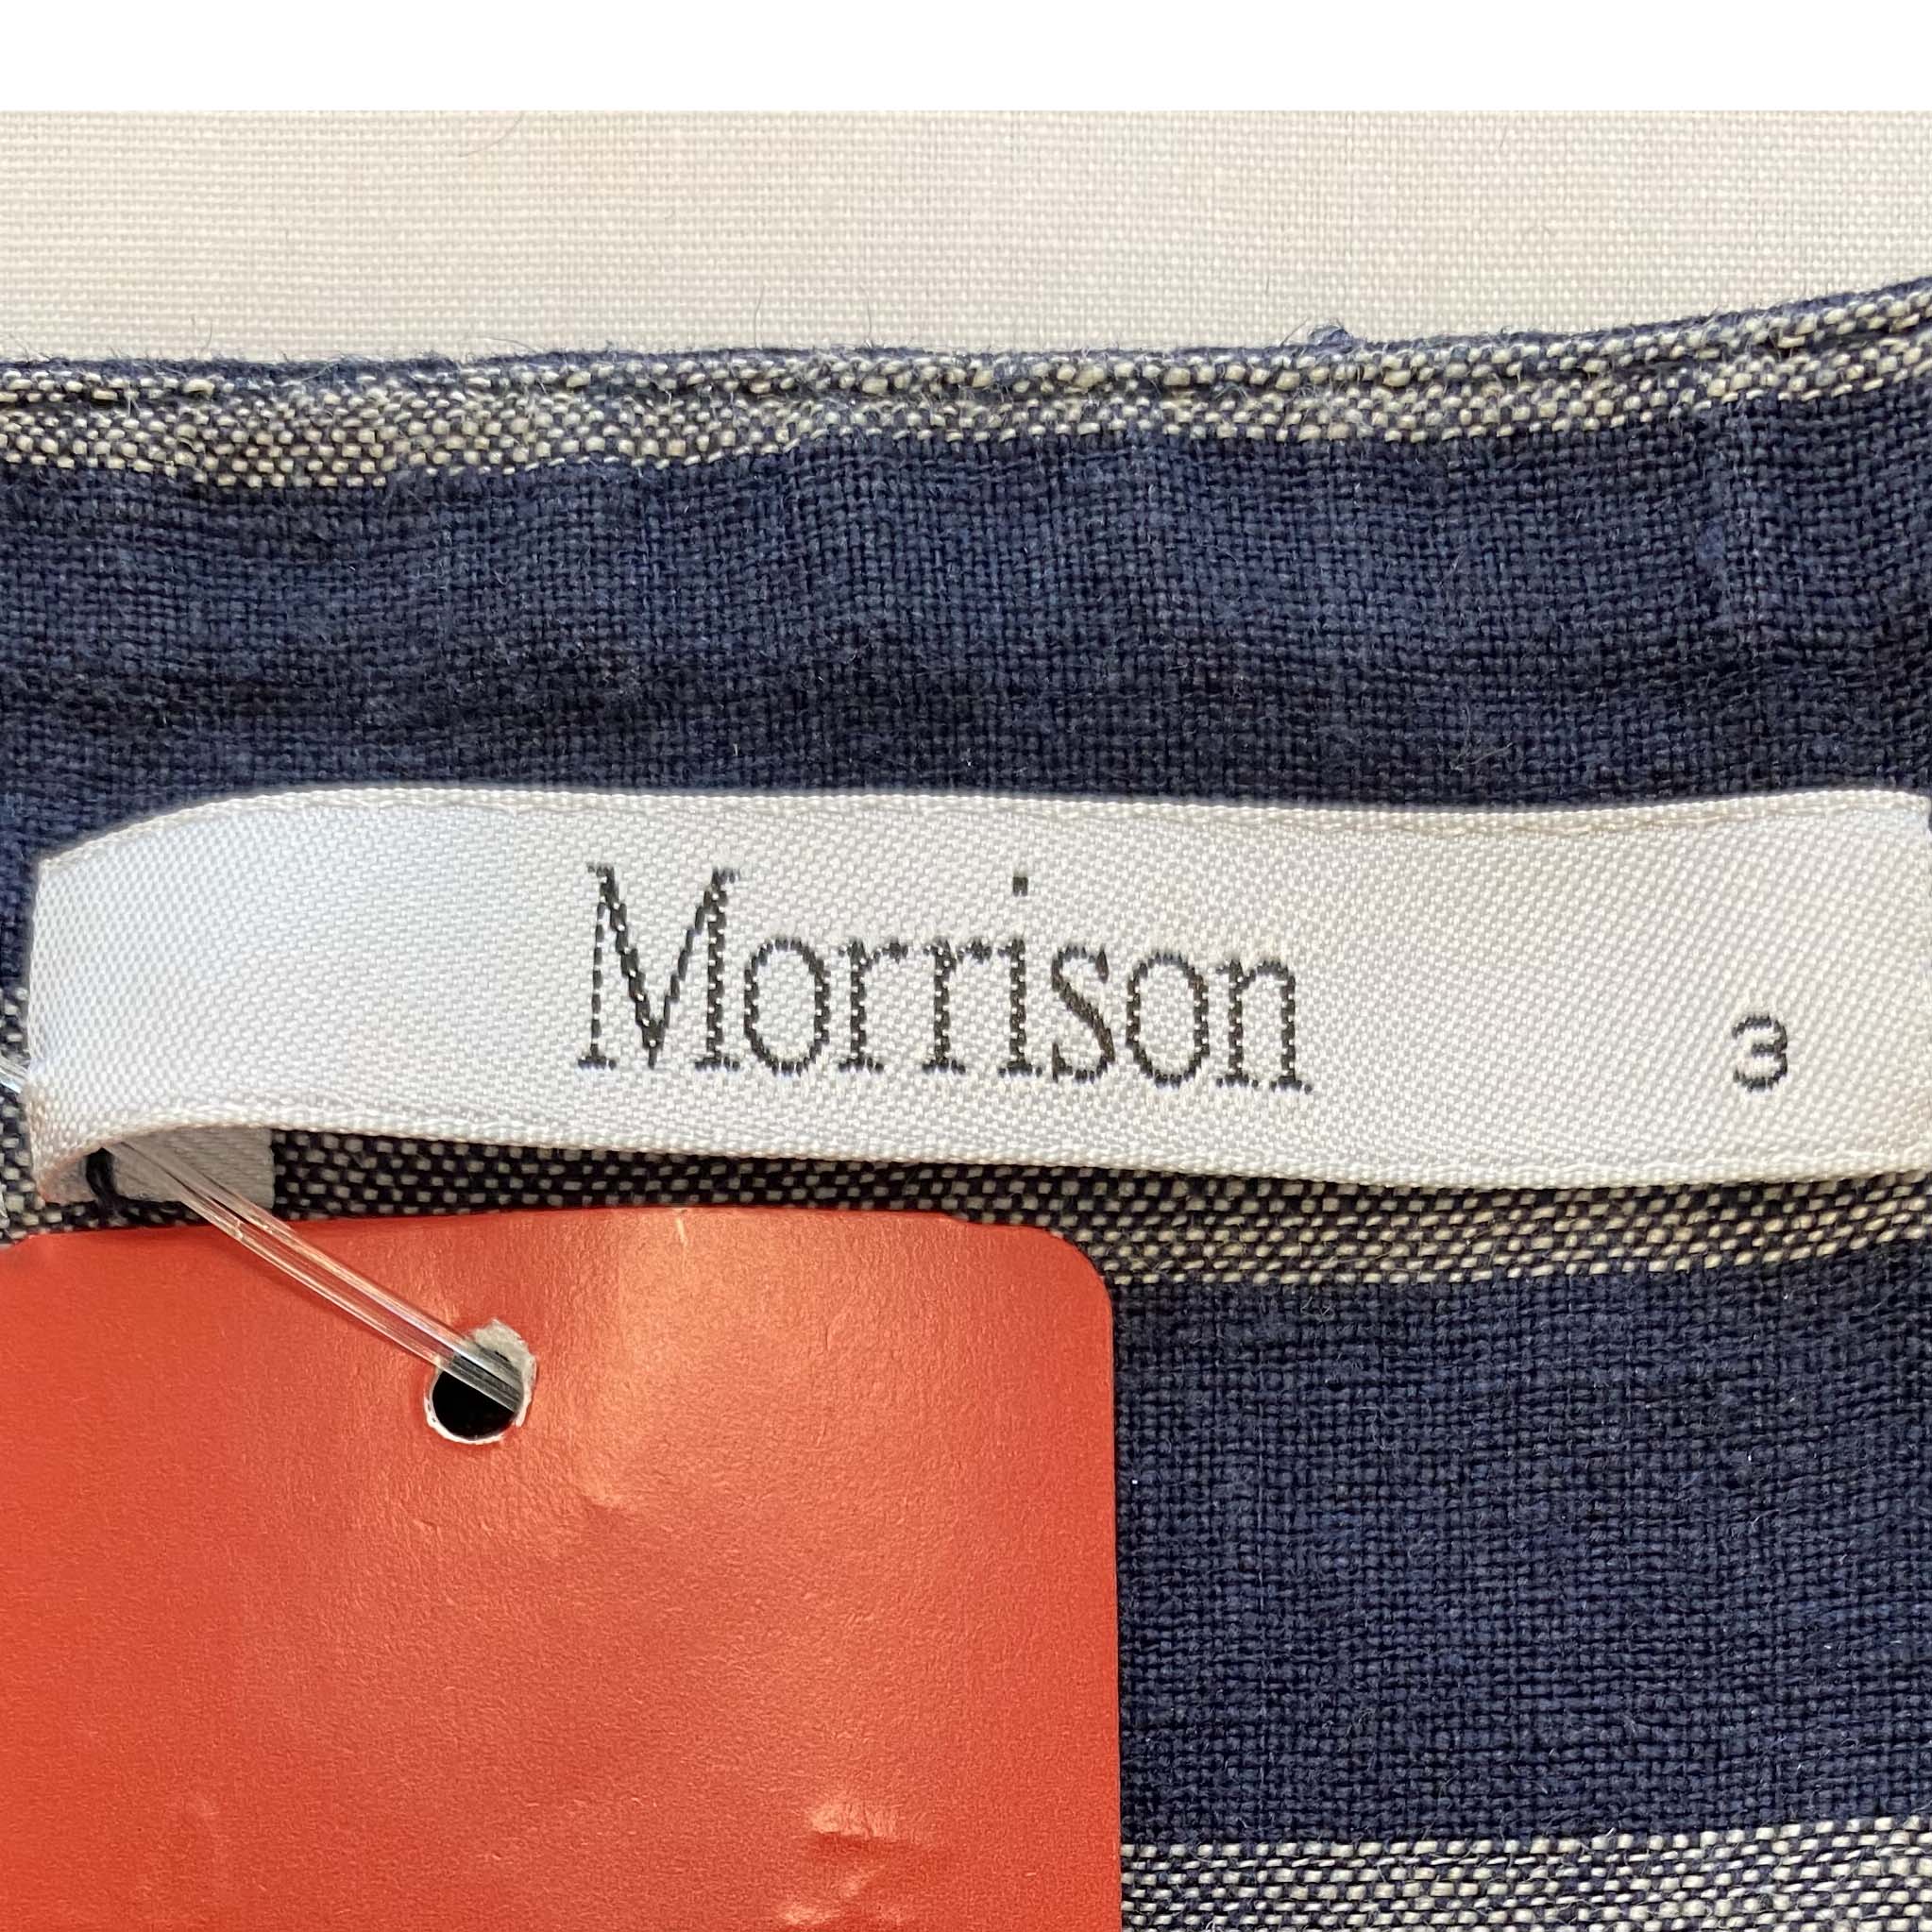 MORRISON Culotte Striped Pants